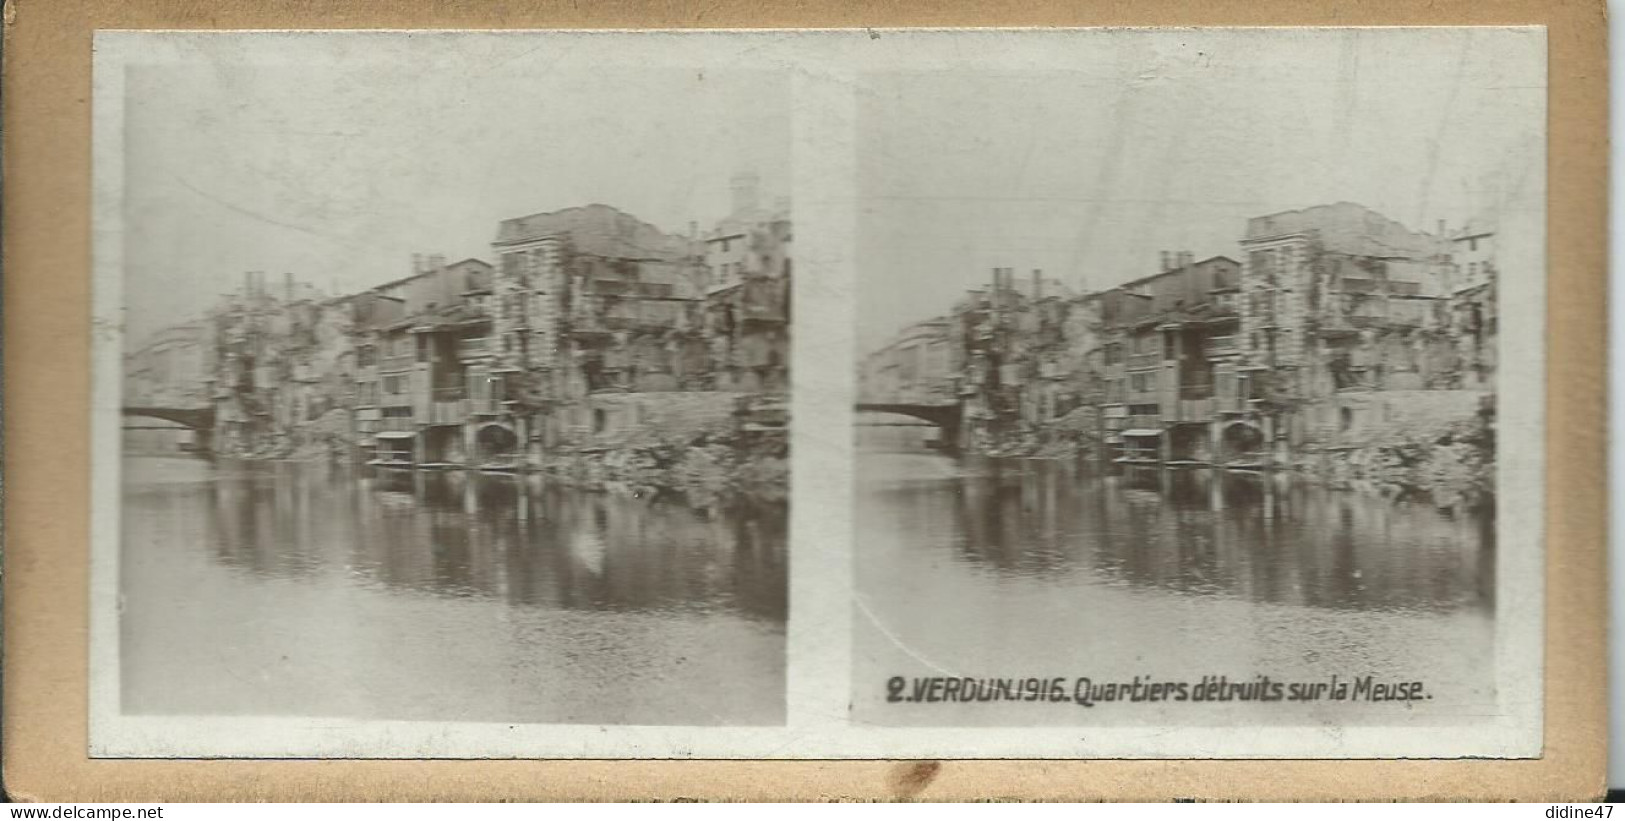 PHOTOS STÉRÉOSCOPIQUES - VERDUN - 1916 Quartier Détruit Sur La Meuse - Stereoscoop